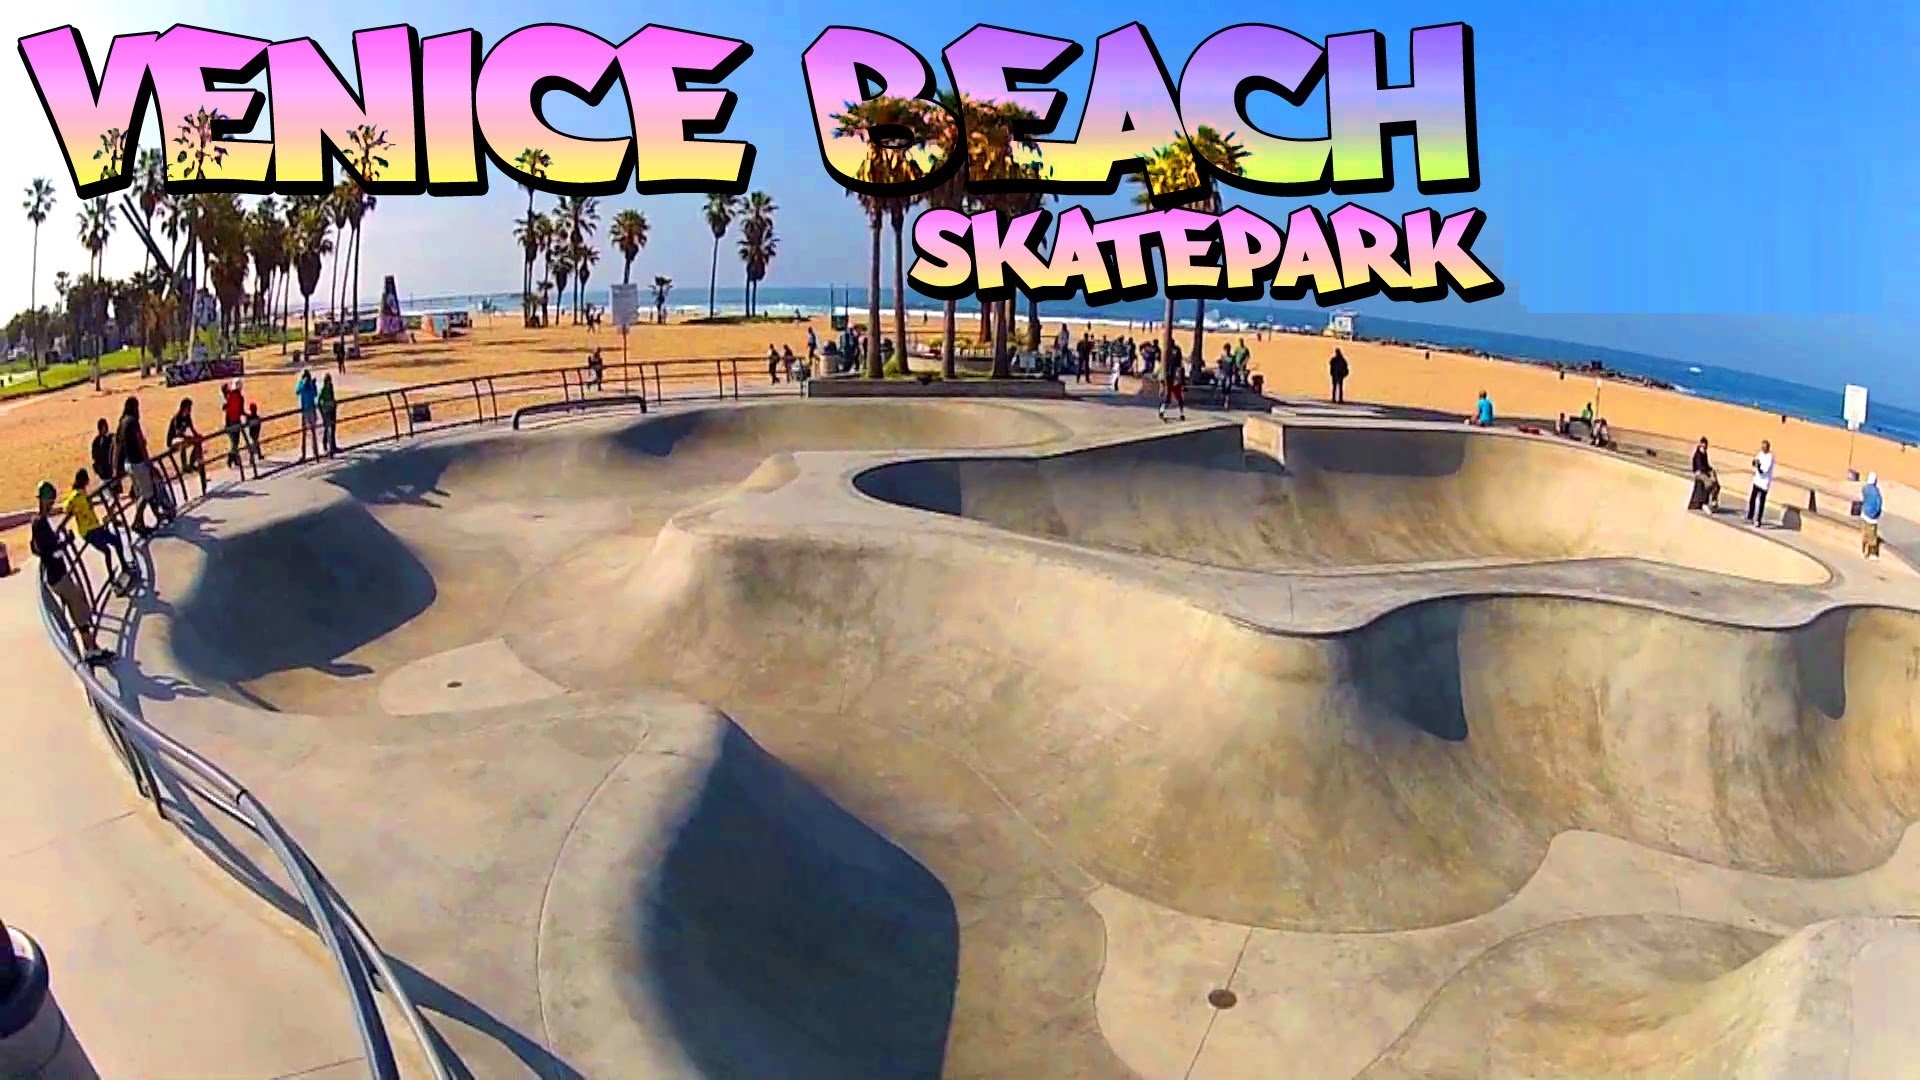 Skatepark a Venice Beach (Los Angeles, California, USA)